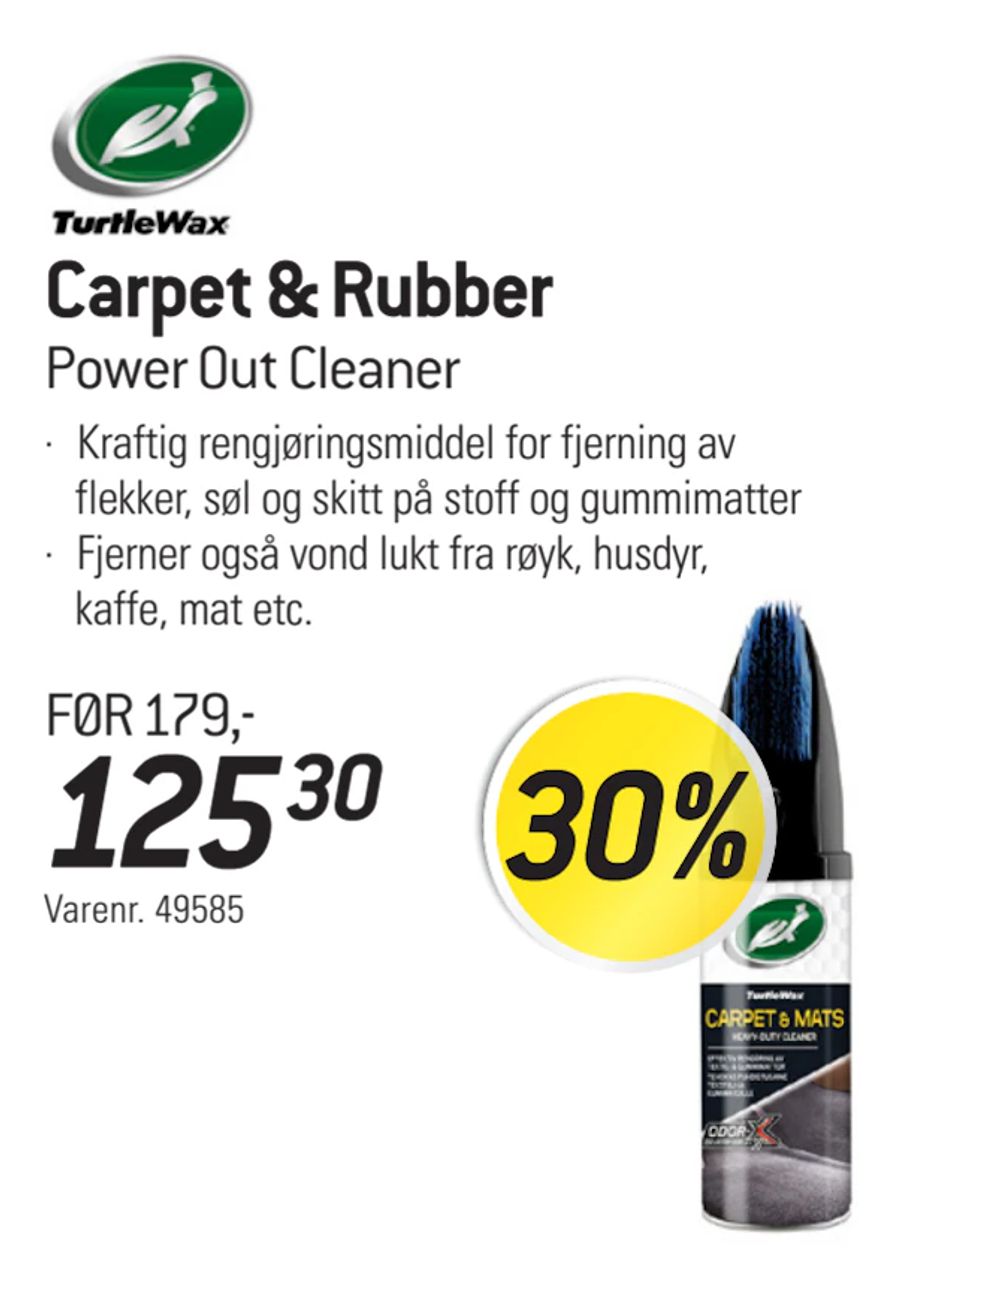 Tilbud på Carpet & Rubber fra thansen til 125,30 kr